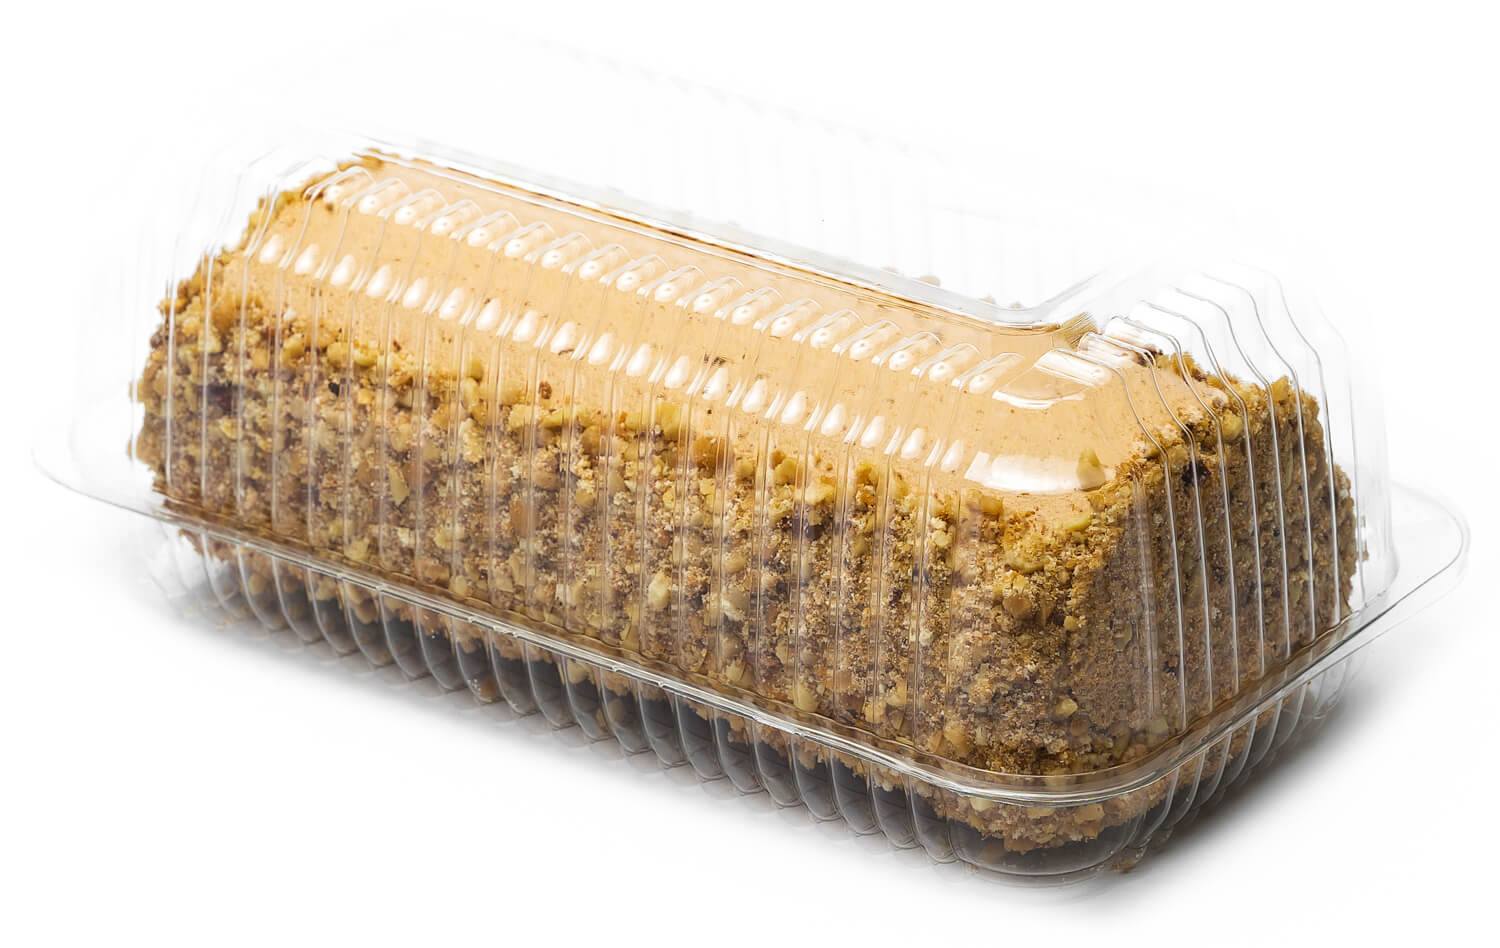 Sponge roll “Toffee” фото 1